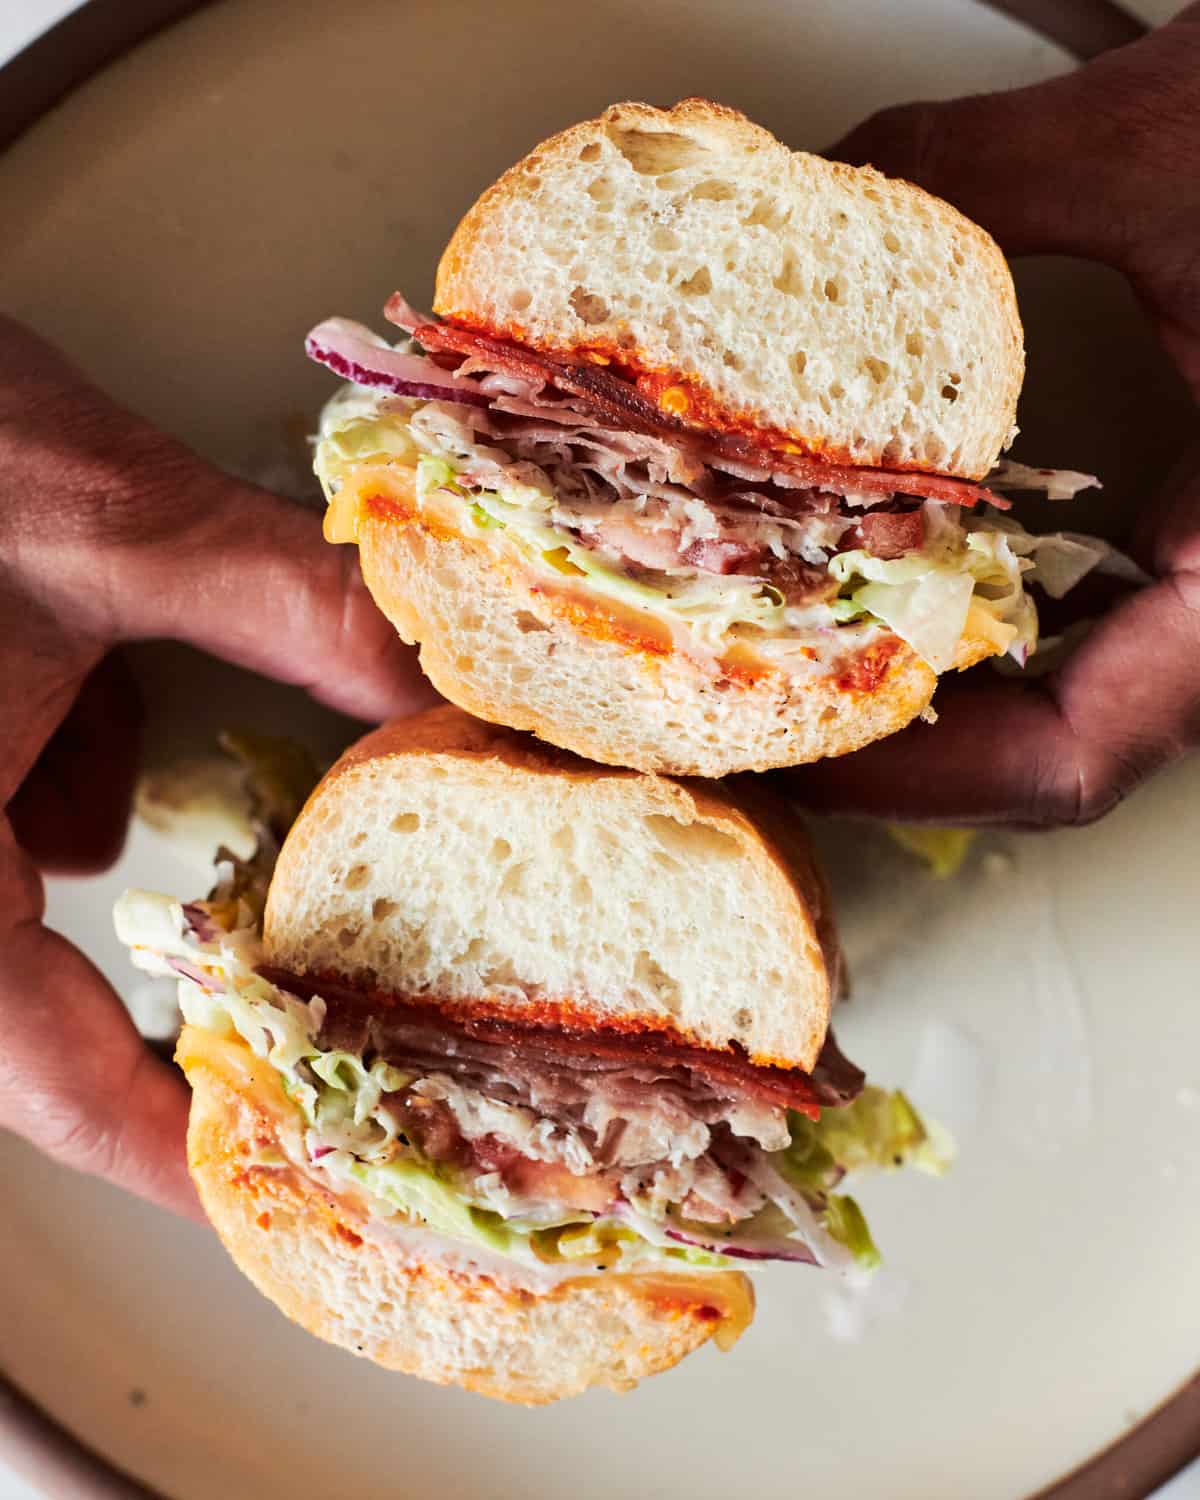 Grinder Sandwich Halves in Hand